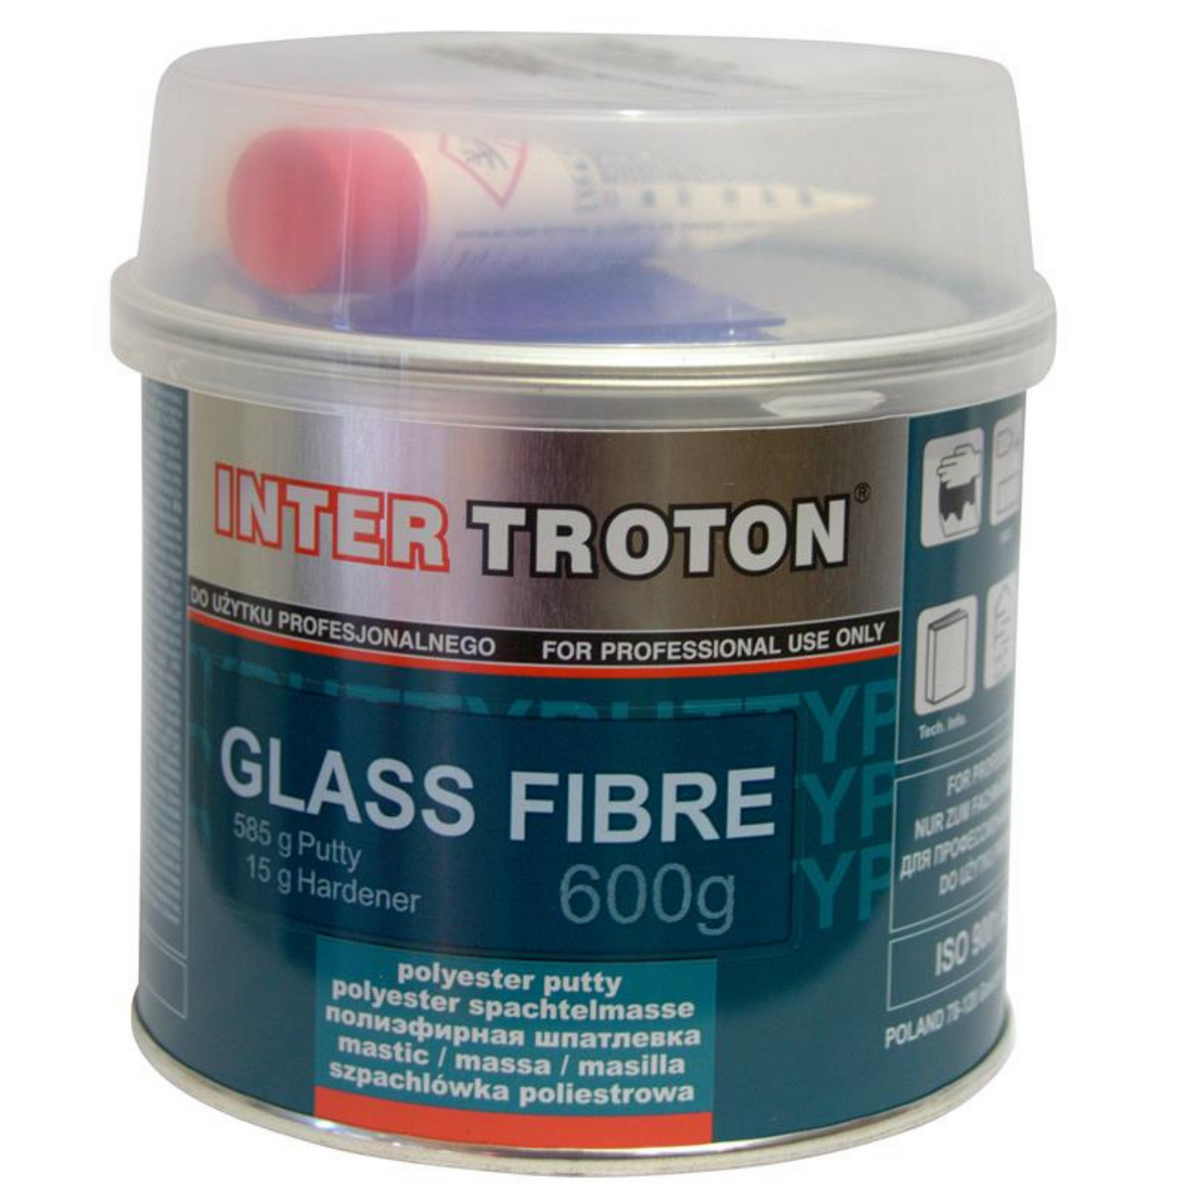 Troton-Glass-Fibre-600gm_V